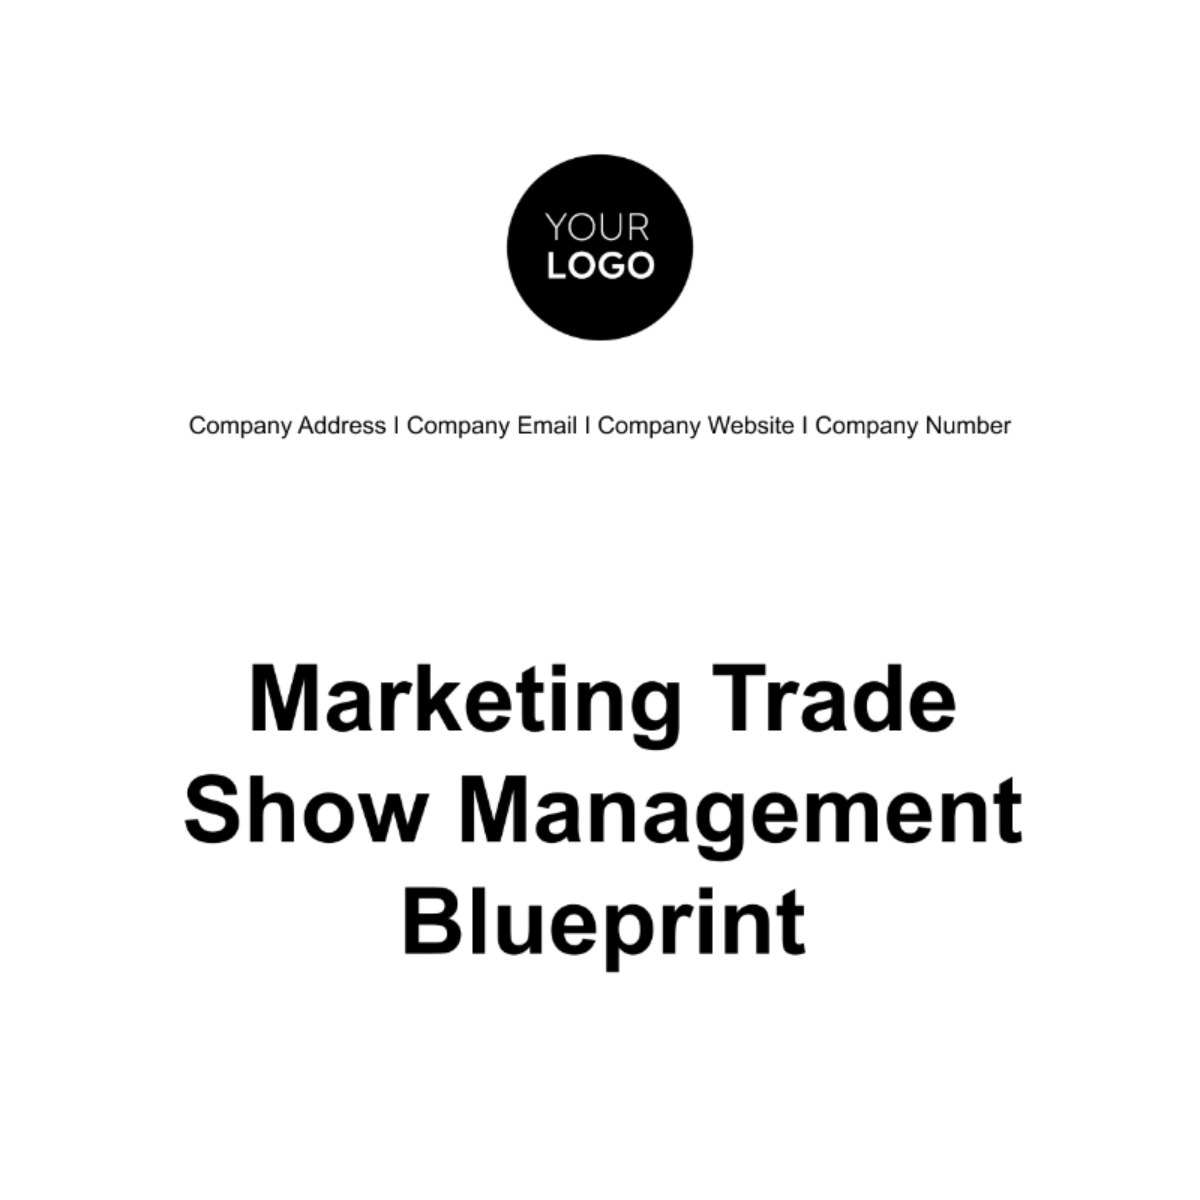 Marketing Trade Show Management Blueprint Template